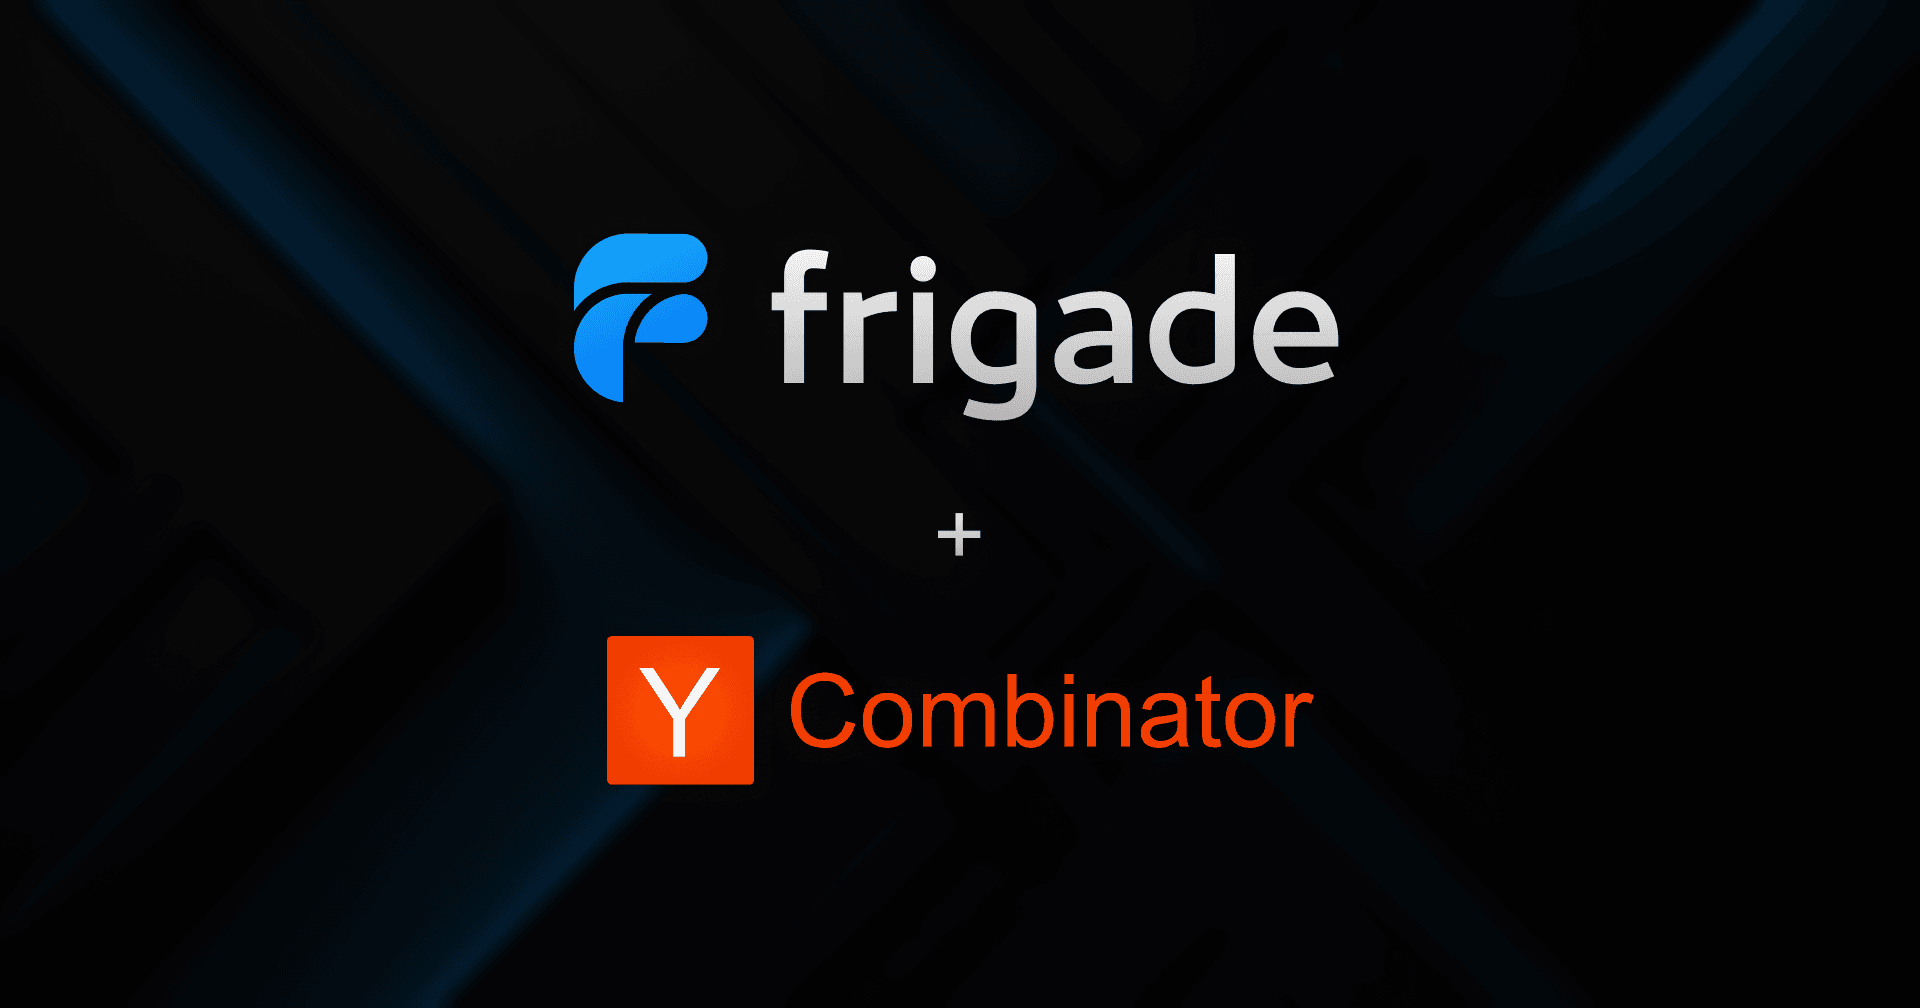 Frigade joins Y Combinator